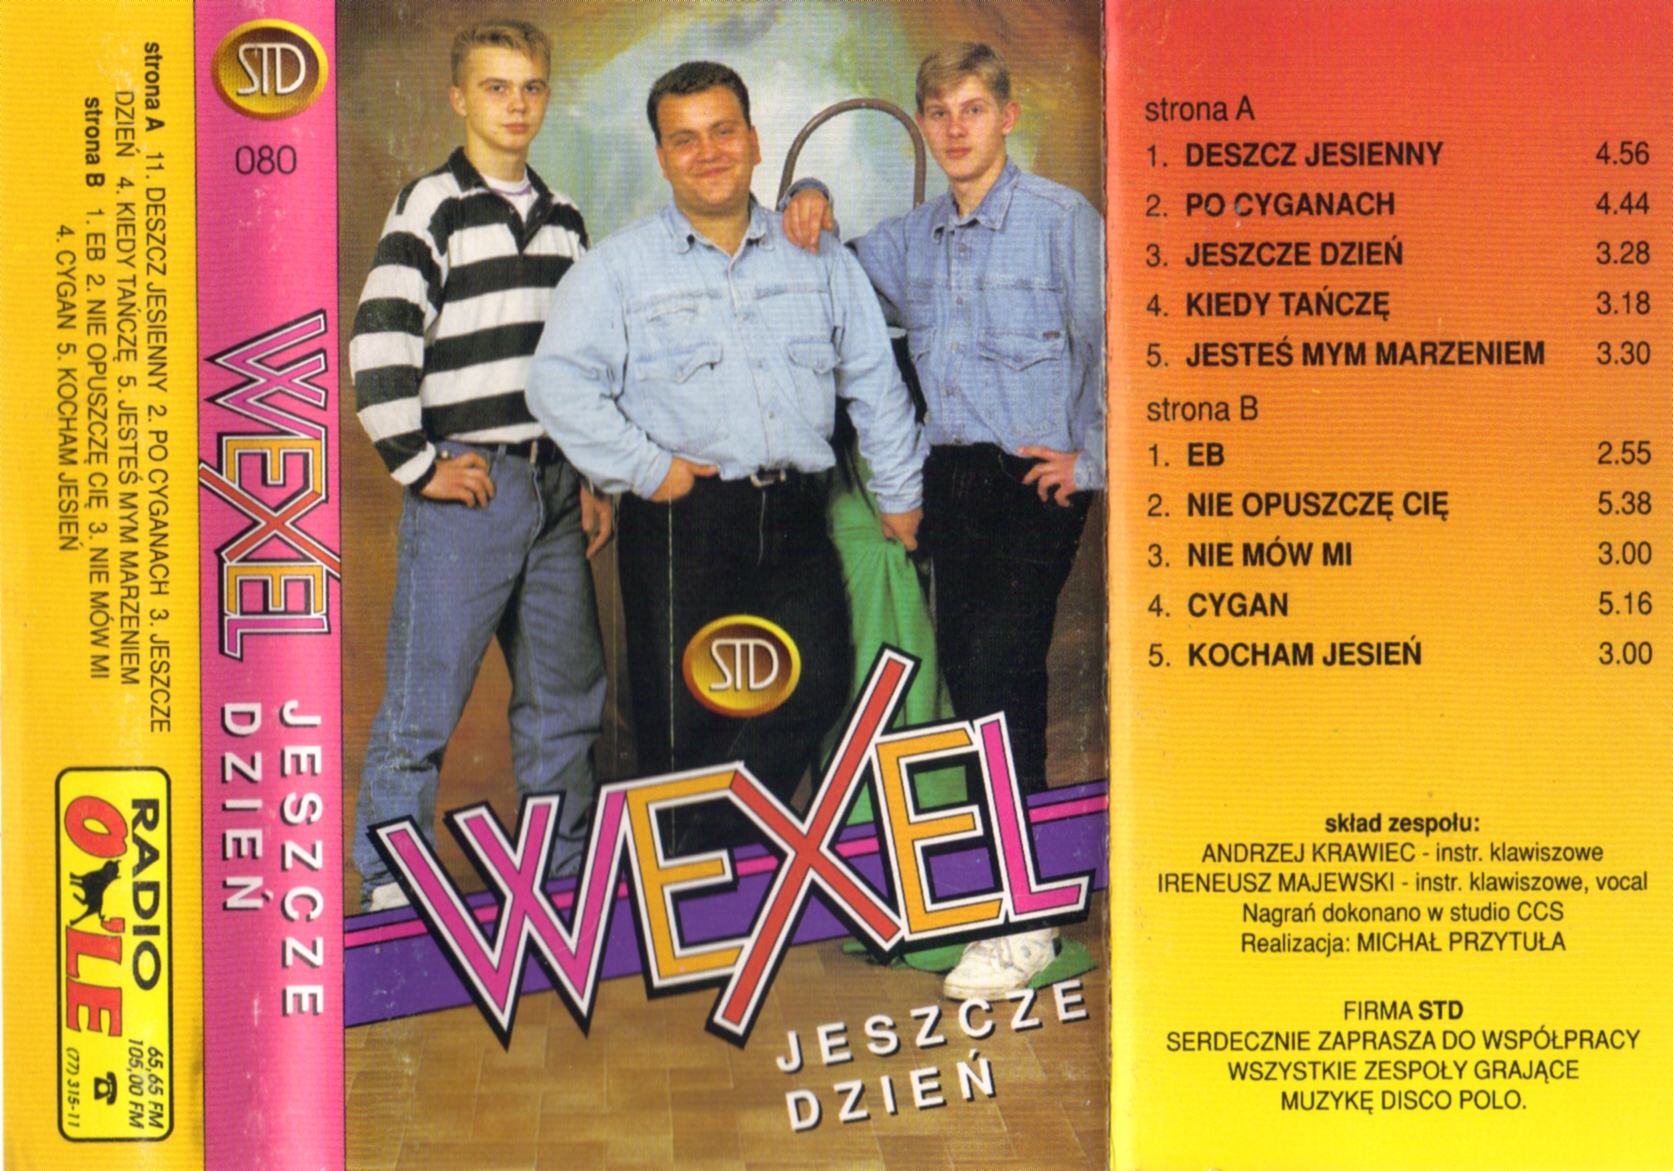 Wexel-Jeszcze Dzień - 2012-11-20 204149.JPG